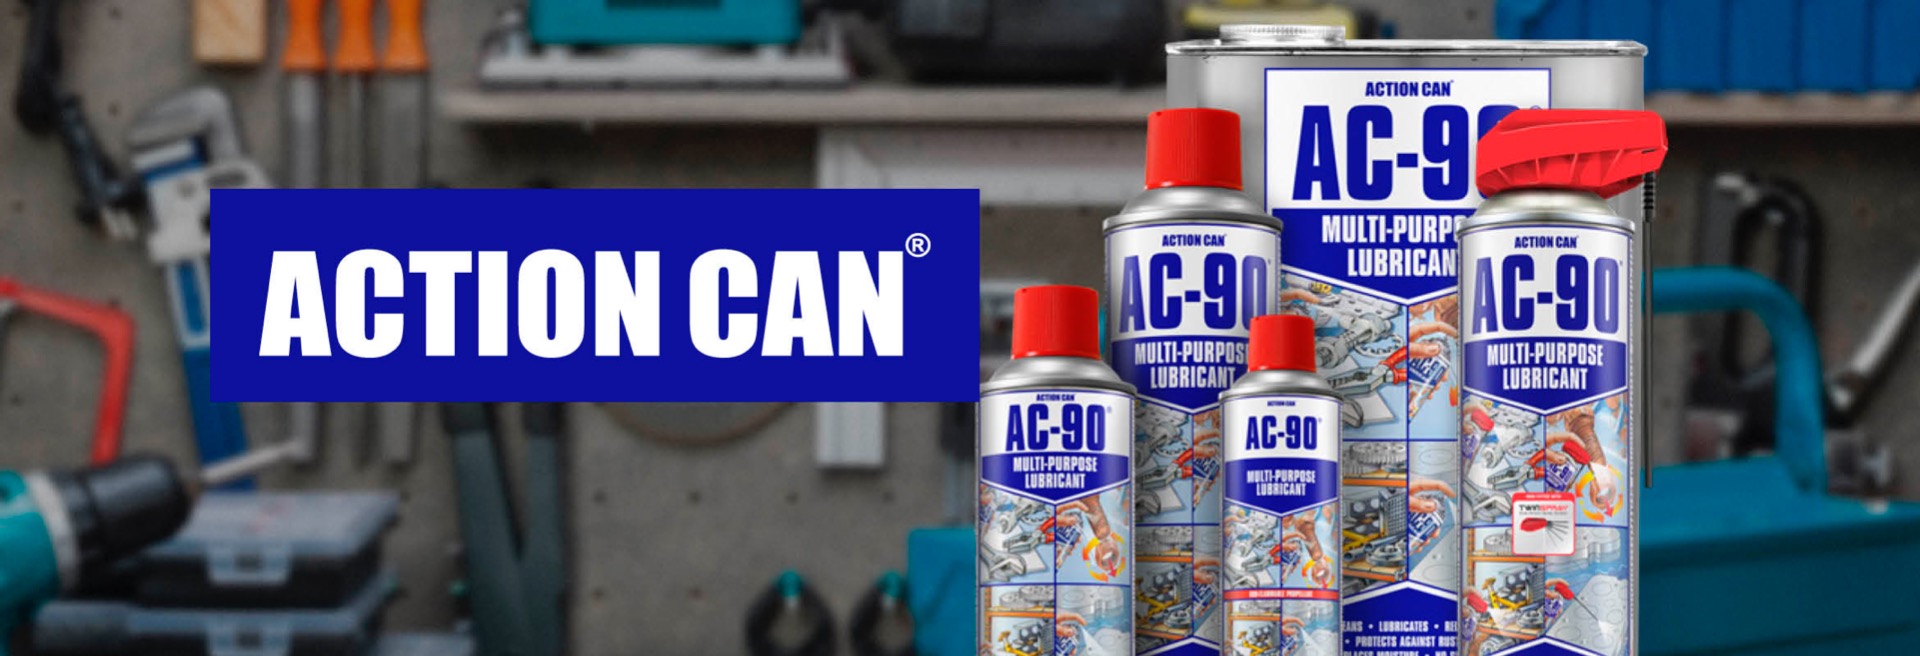 ACTION CAN - SMØRREMIDDEL - Rengøring - Metalbearbejdning - Anti-korrosions maling - Anti-korrosions maling - Værksted - Industri